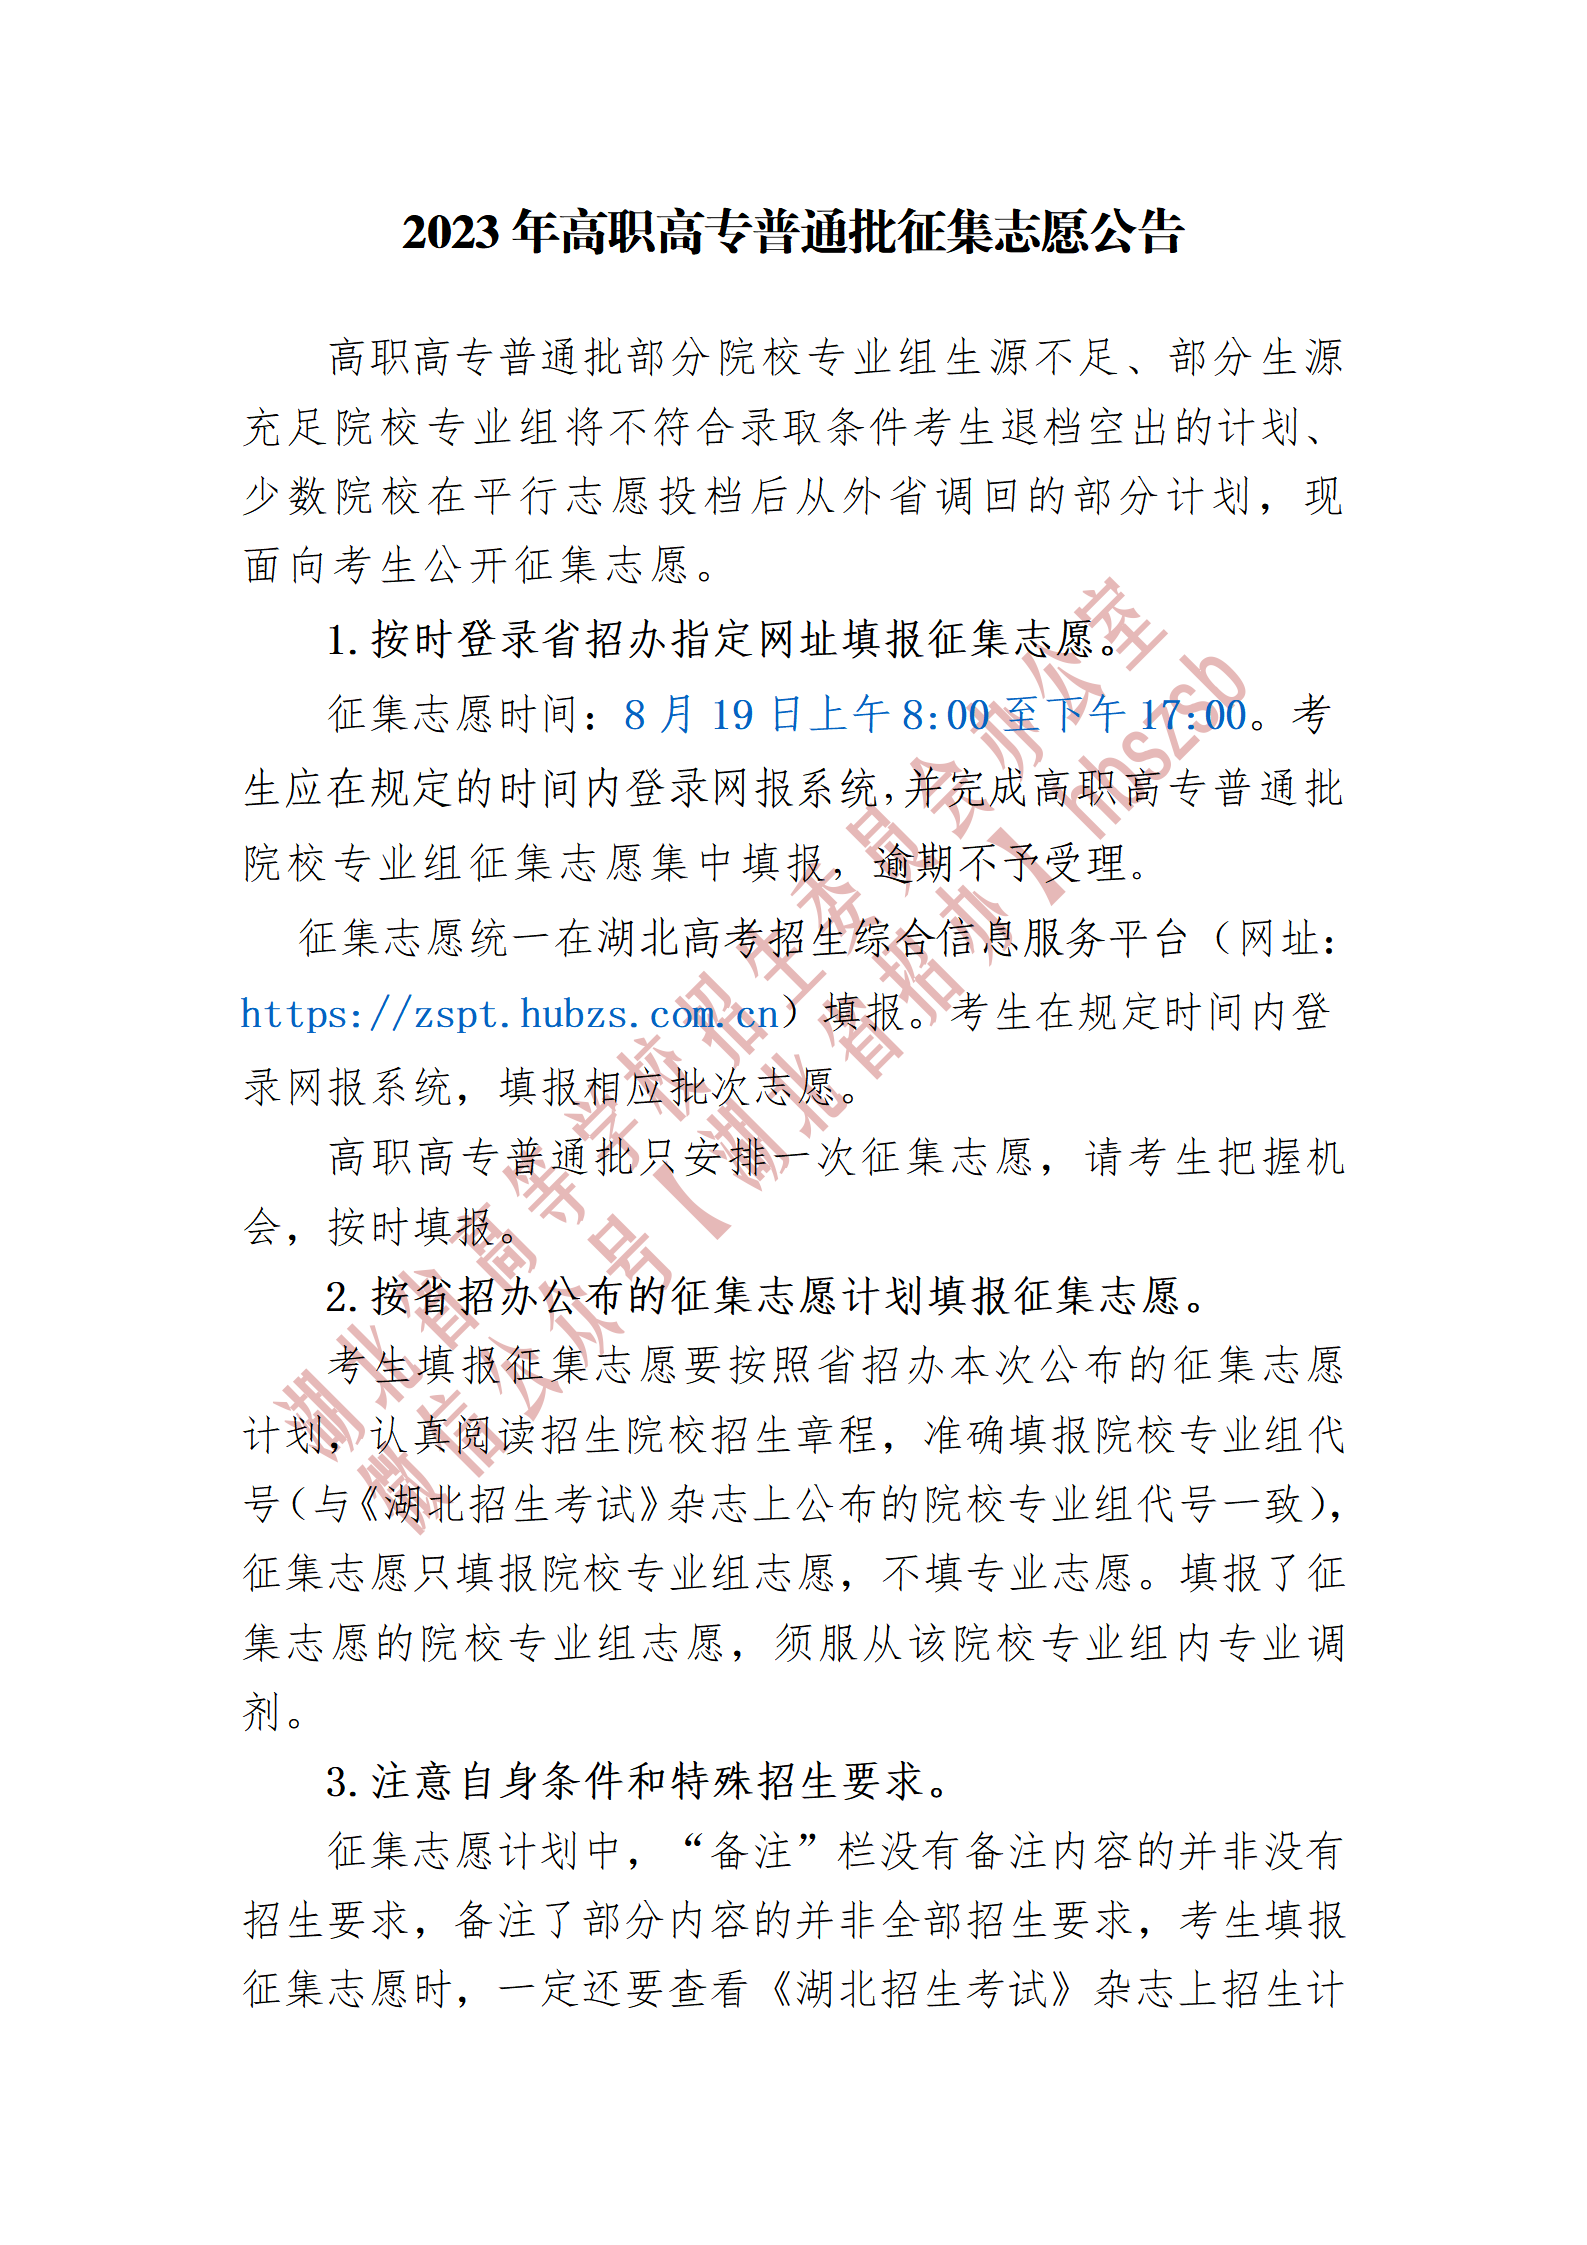 2023湖北省高职高专普通批征集志愿公告